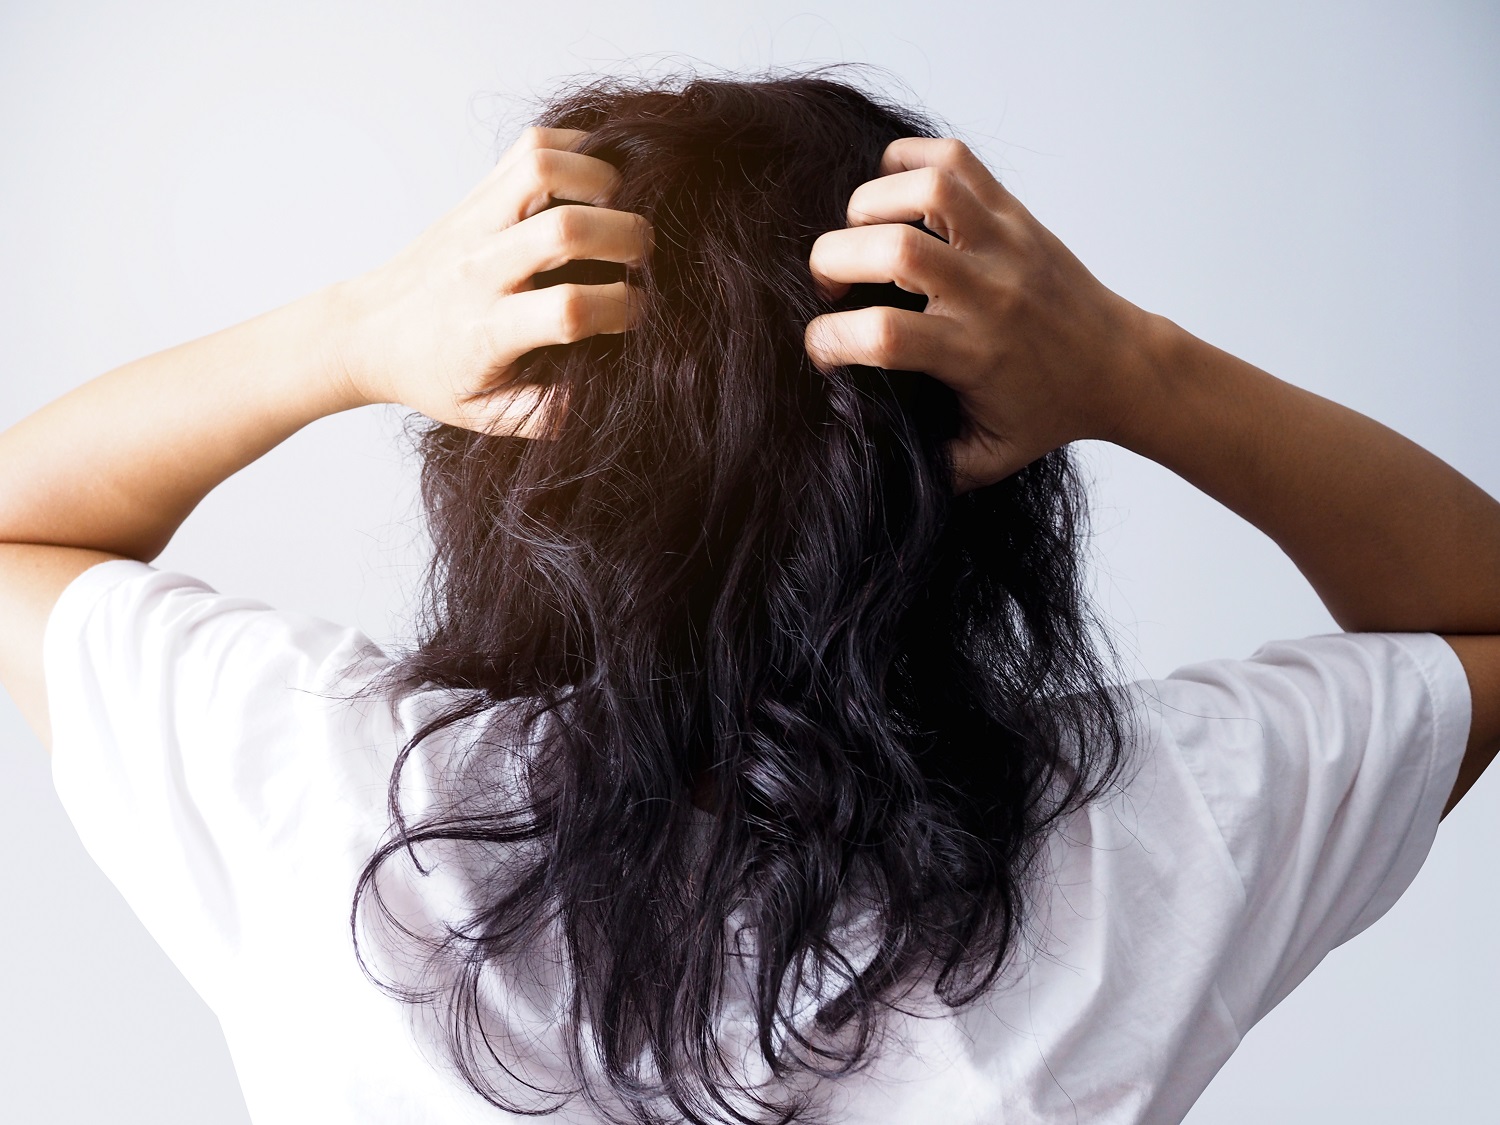 اكزيما الشعر: الأسباب، وطرق الوقاية منها